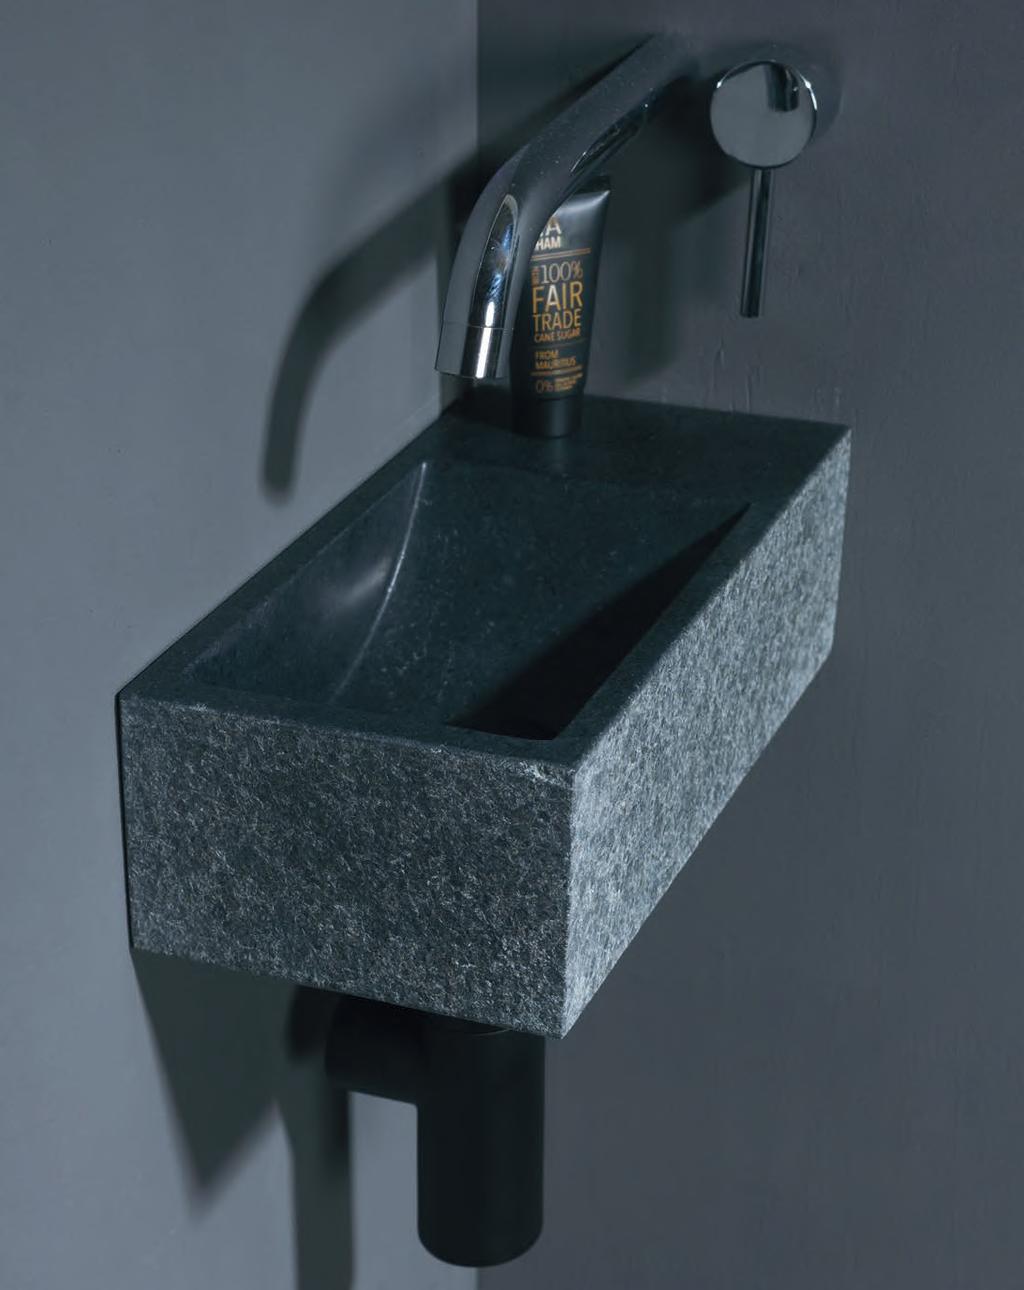 Een kleine toiletfontein gemaakt uit één stuk natuursteen. Dit model is verkrijgbaar in meerdere soorten natuursteen en het kraangat kan uitgevoerd worden aan de linker- of rechterkant.